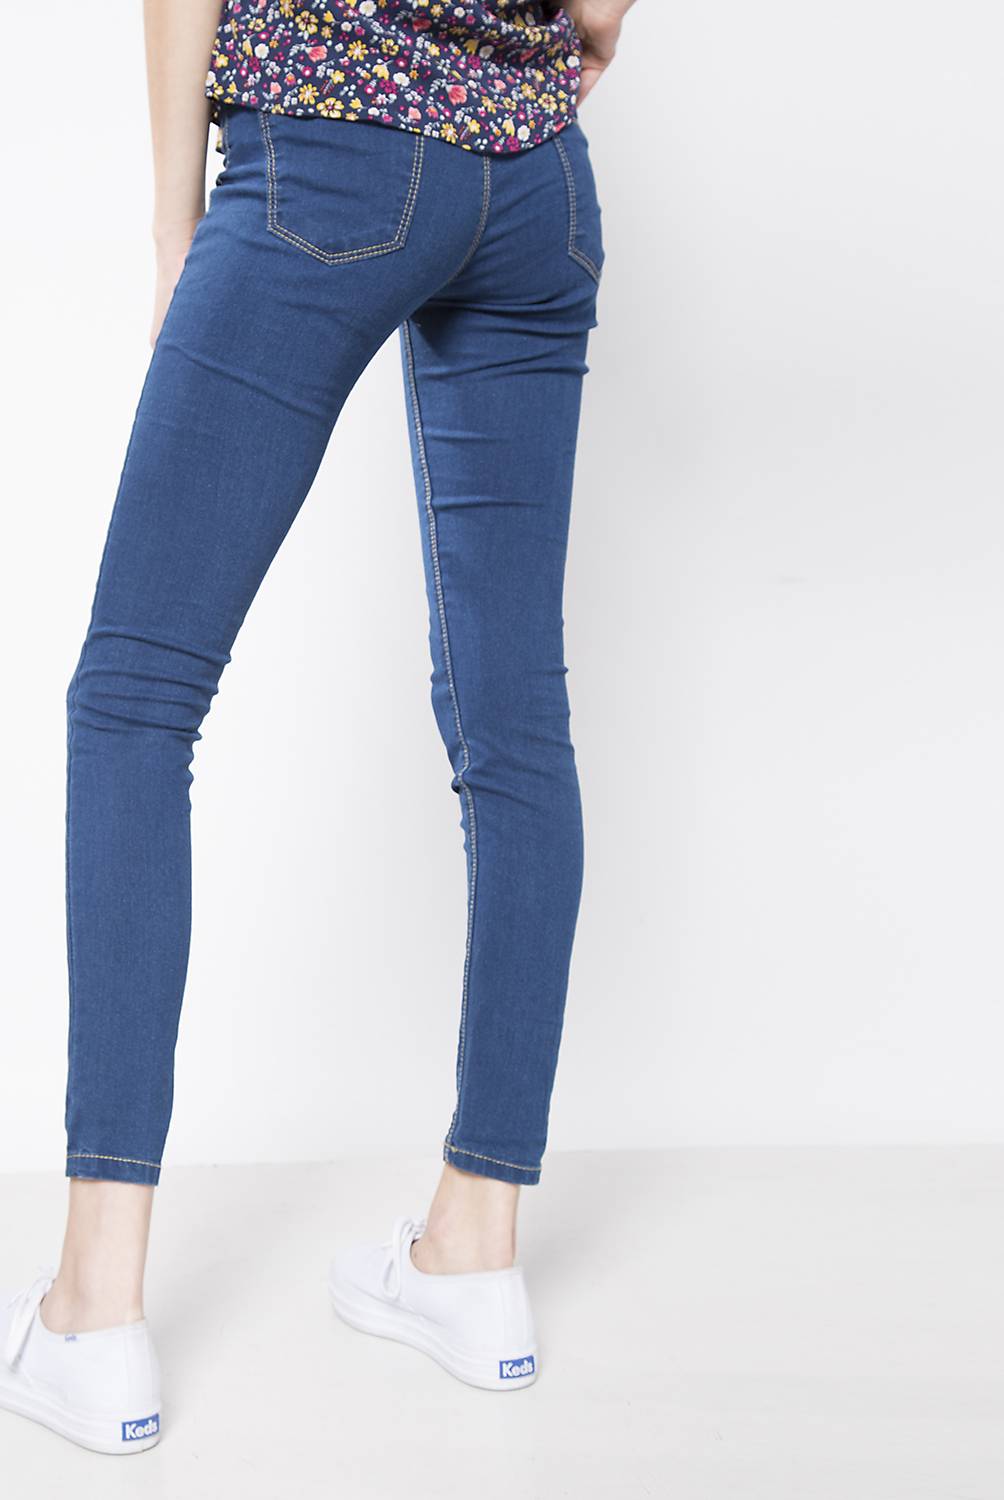 SYBILLA - Jeans Básico Moda